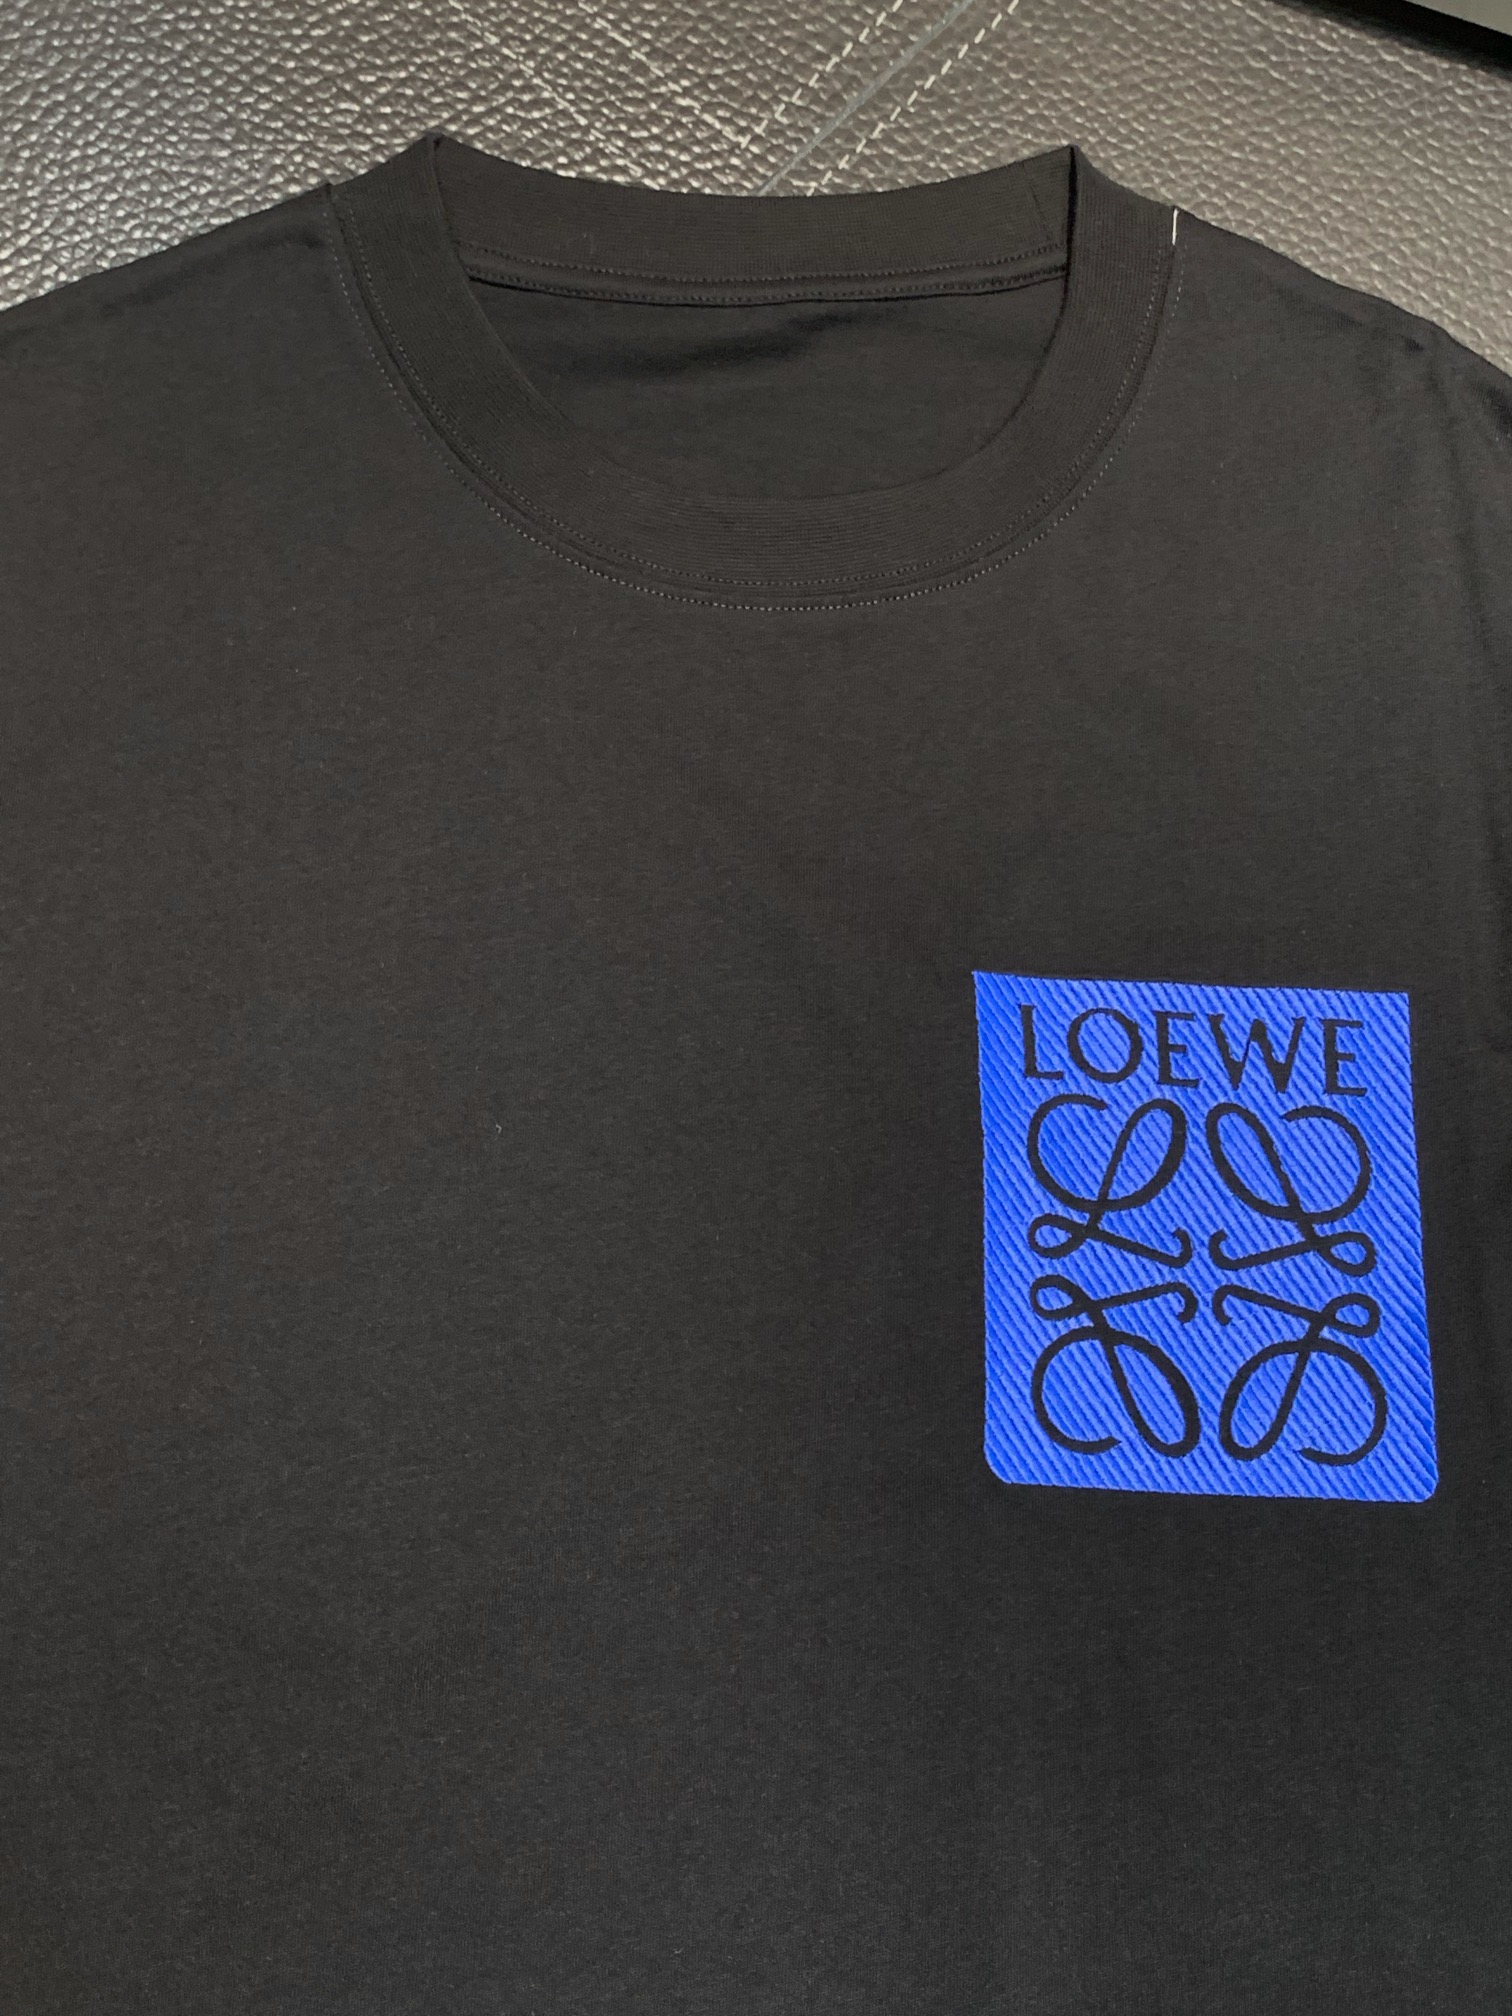 Loewe罗意威独家专供新款原单男士休闲短袖高端定制高版本时尚百搭爆款️原版进口纯棉面料胸前logo图案